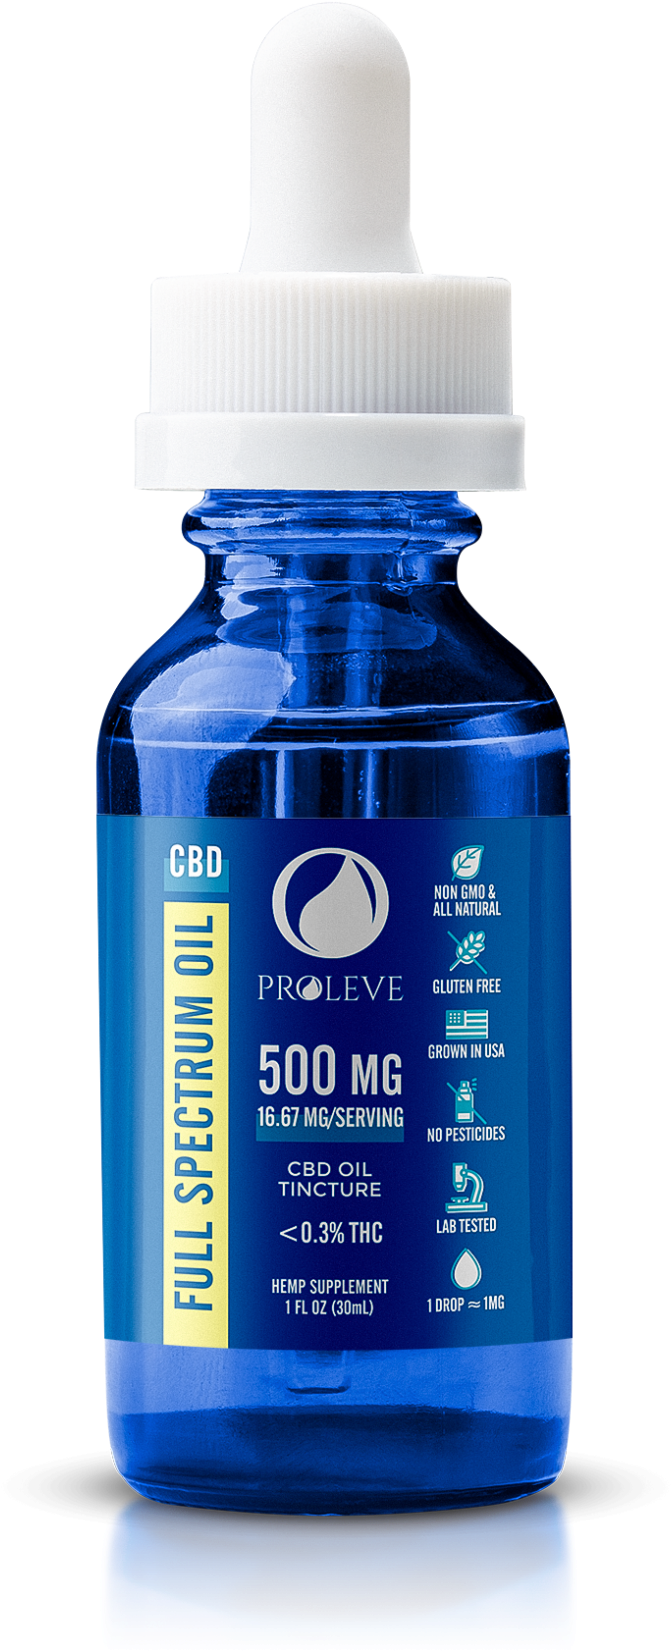 C B D Oil Tincture Bottle500mg PNG